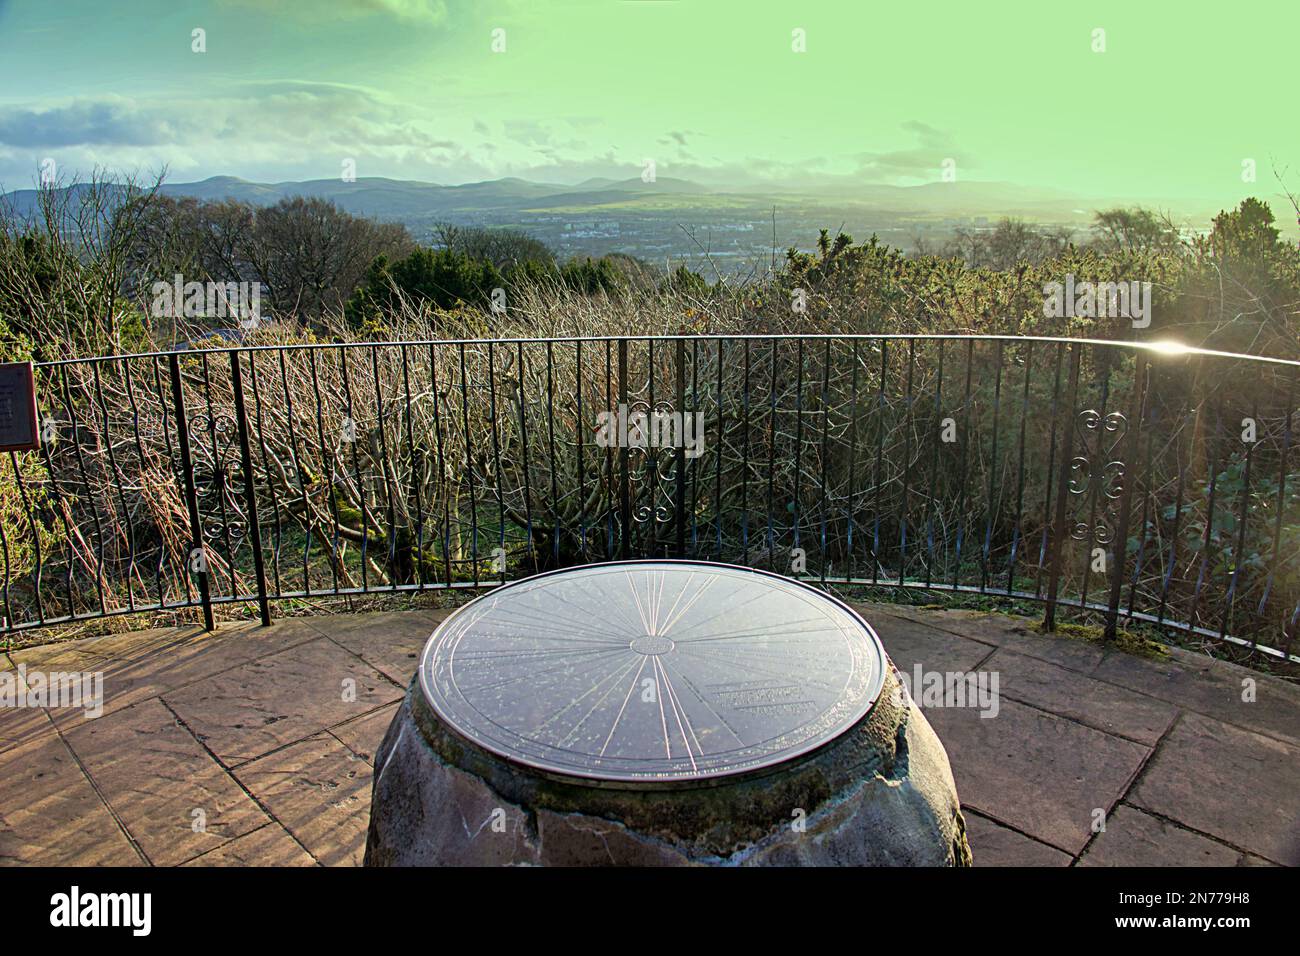 Disco della mappa della piattaforma di osservazione con i marchi di terra, chiamati Hilltop Viewpoint Edinburgh Zoo Foto Stock